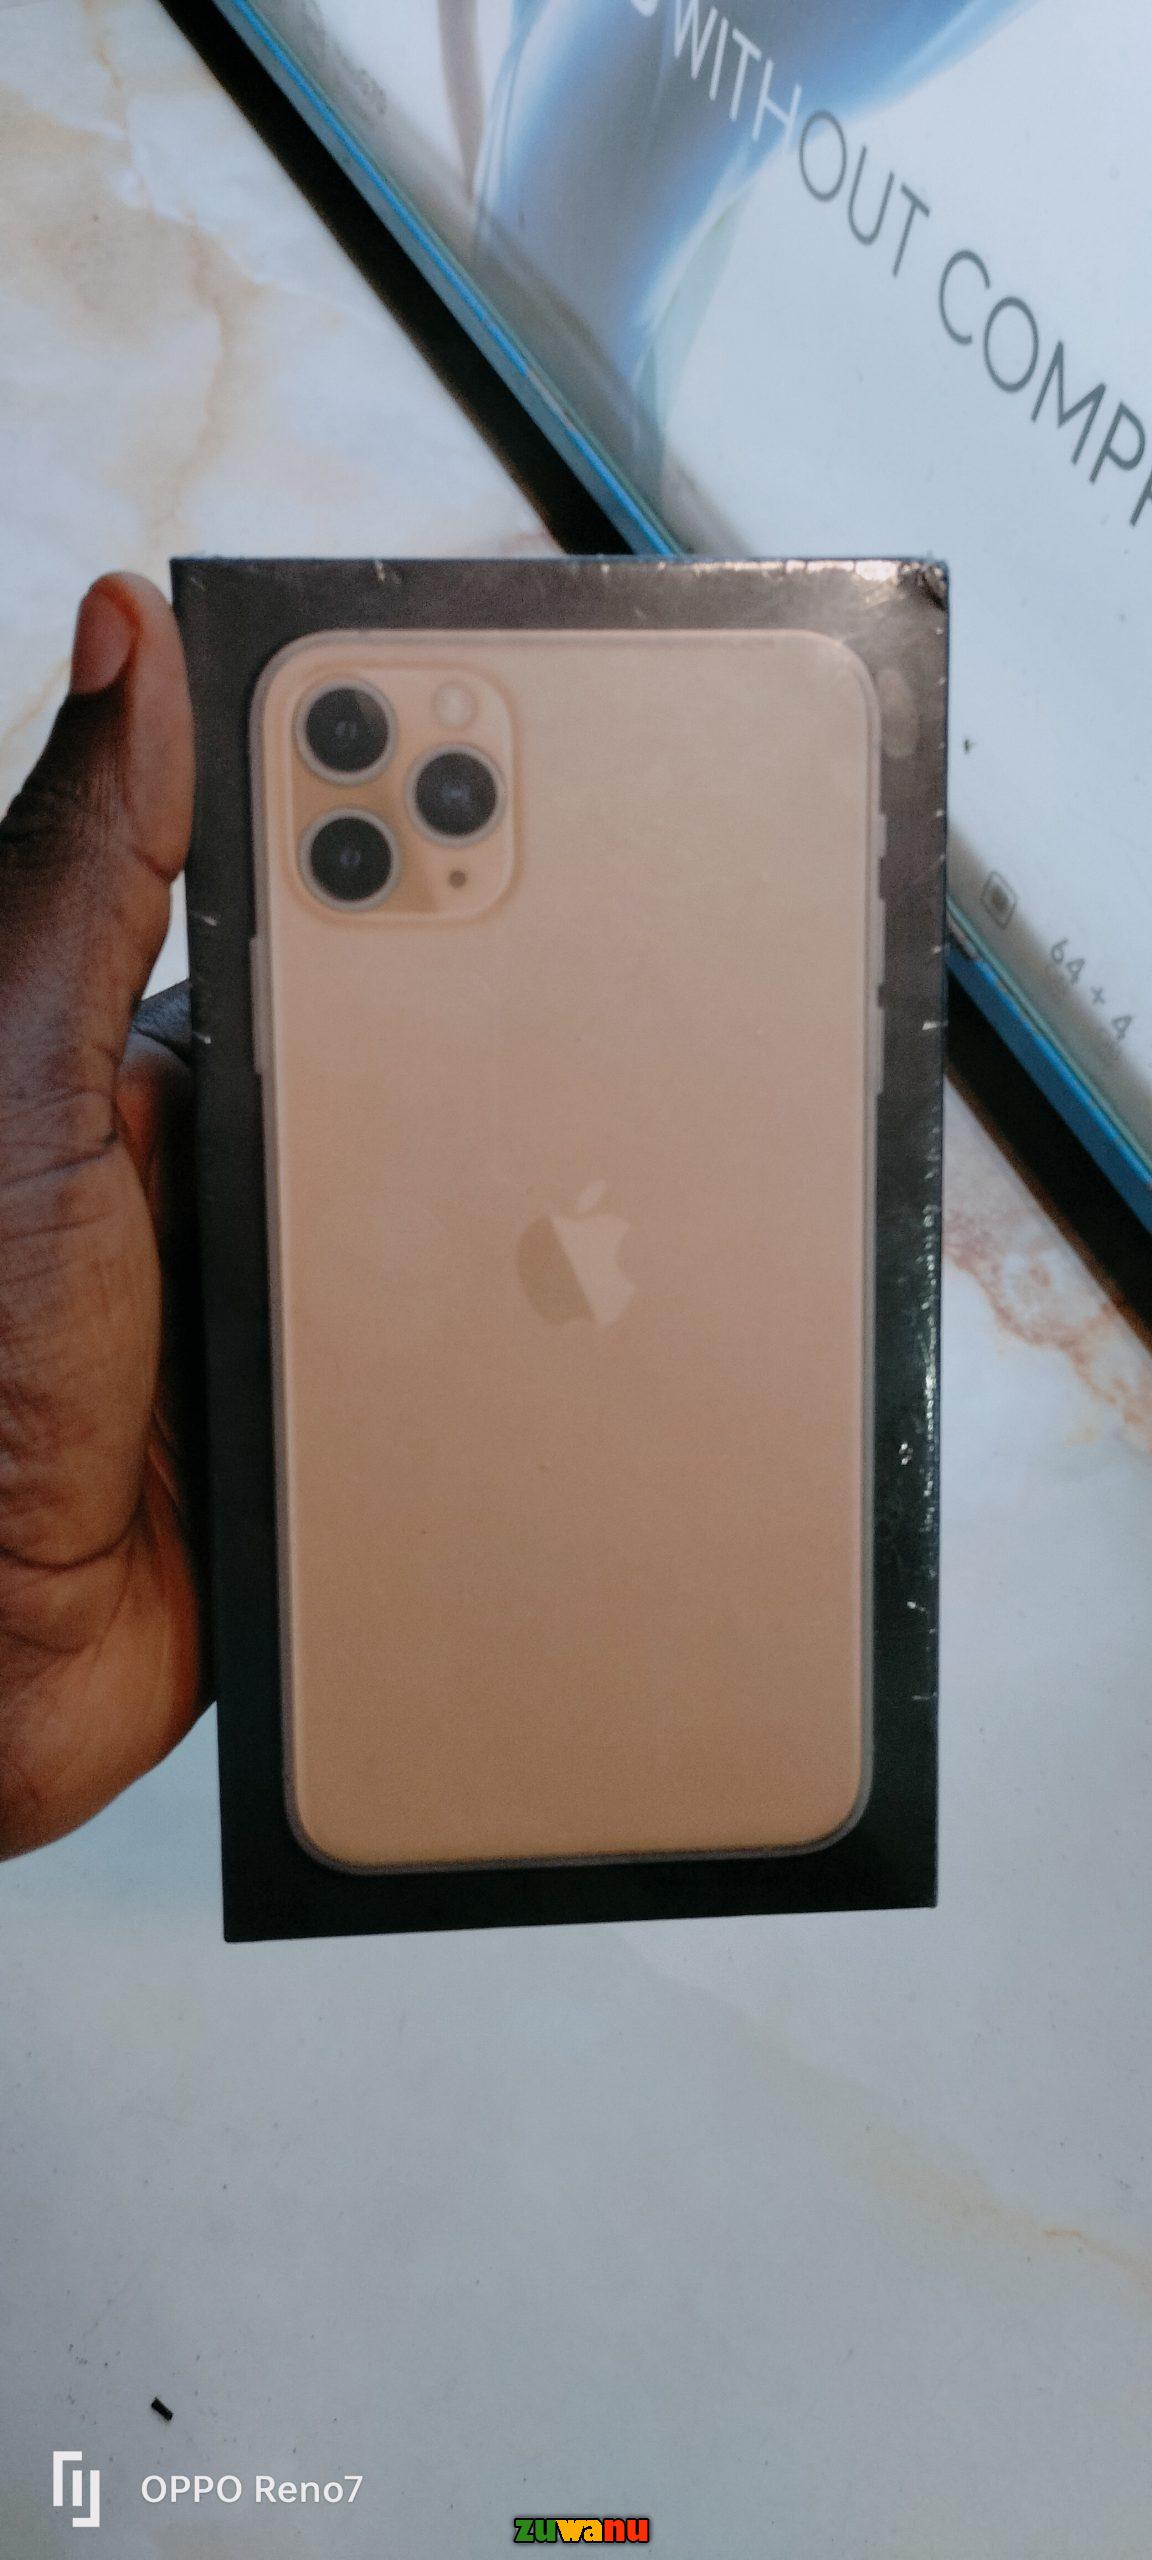 iPhone 11 pro max in Nigeria